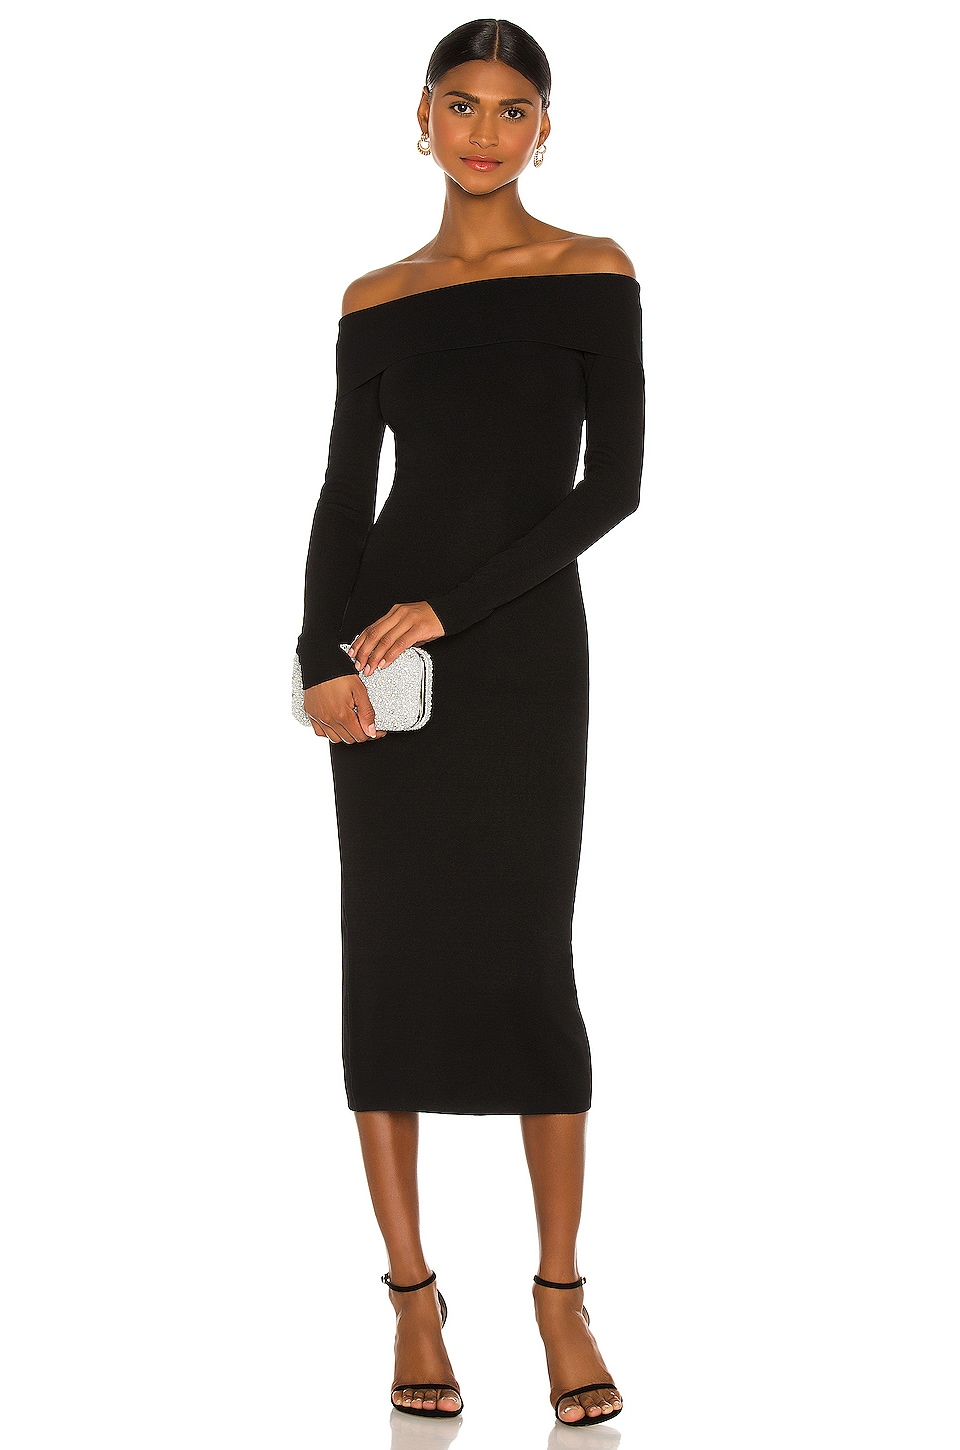 Simple Elegant Off Shoulder Black Dress - Marisela Veludo - Fashion Designer